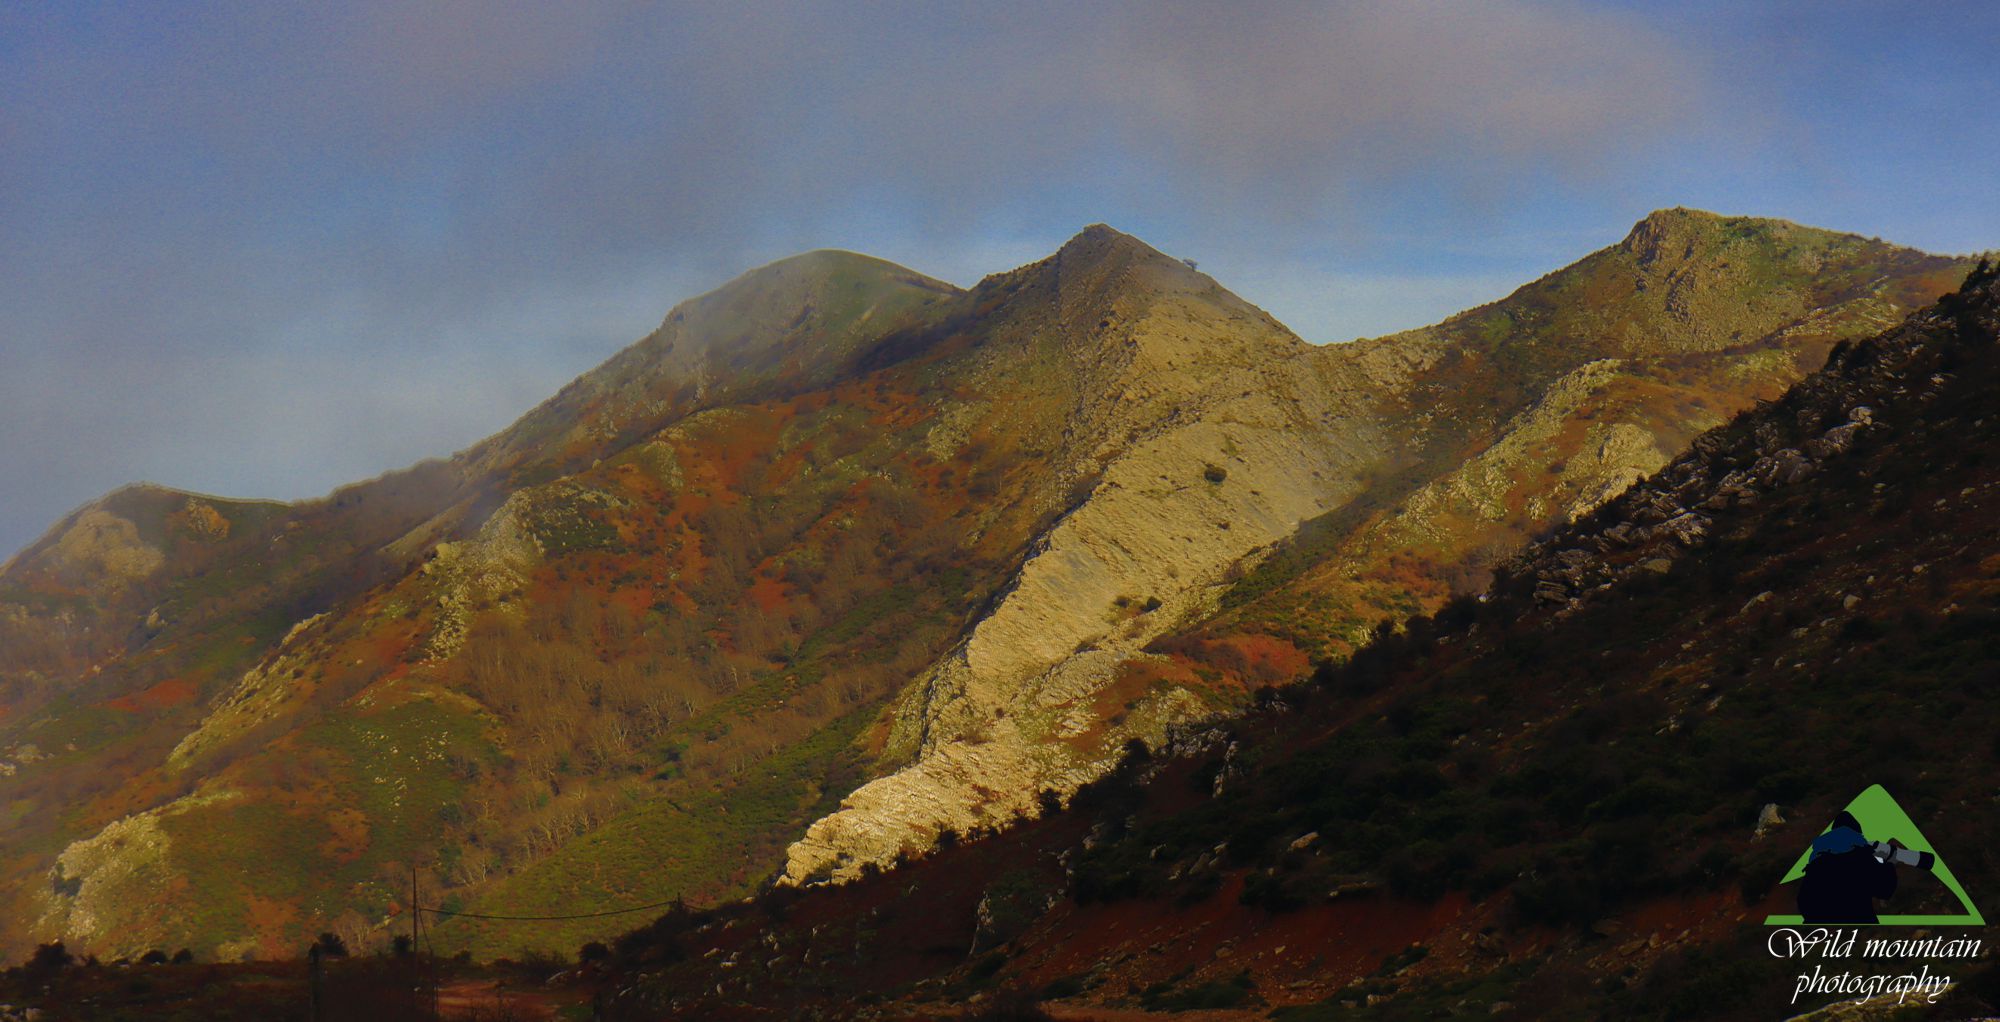 Οι βιότοποι της Νότιας Εύβοιας: Η Όχη είναι ένα από τα λίγα βουνά που οι ερικώνες και οι φρυγανότοποι ξεπερνούν τα 1000 μ. υψόμετρο και φτάνουν μέχρι τις κορυφές